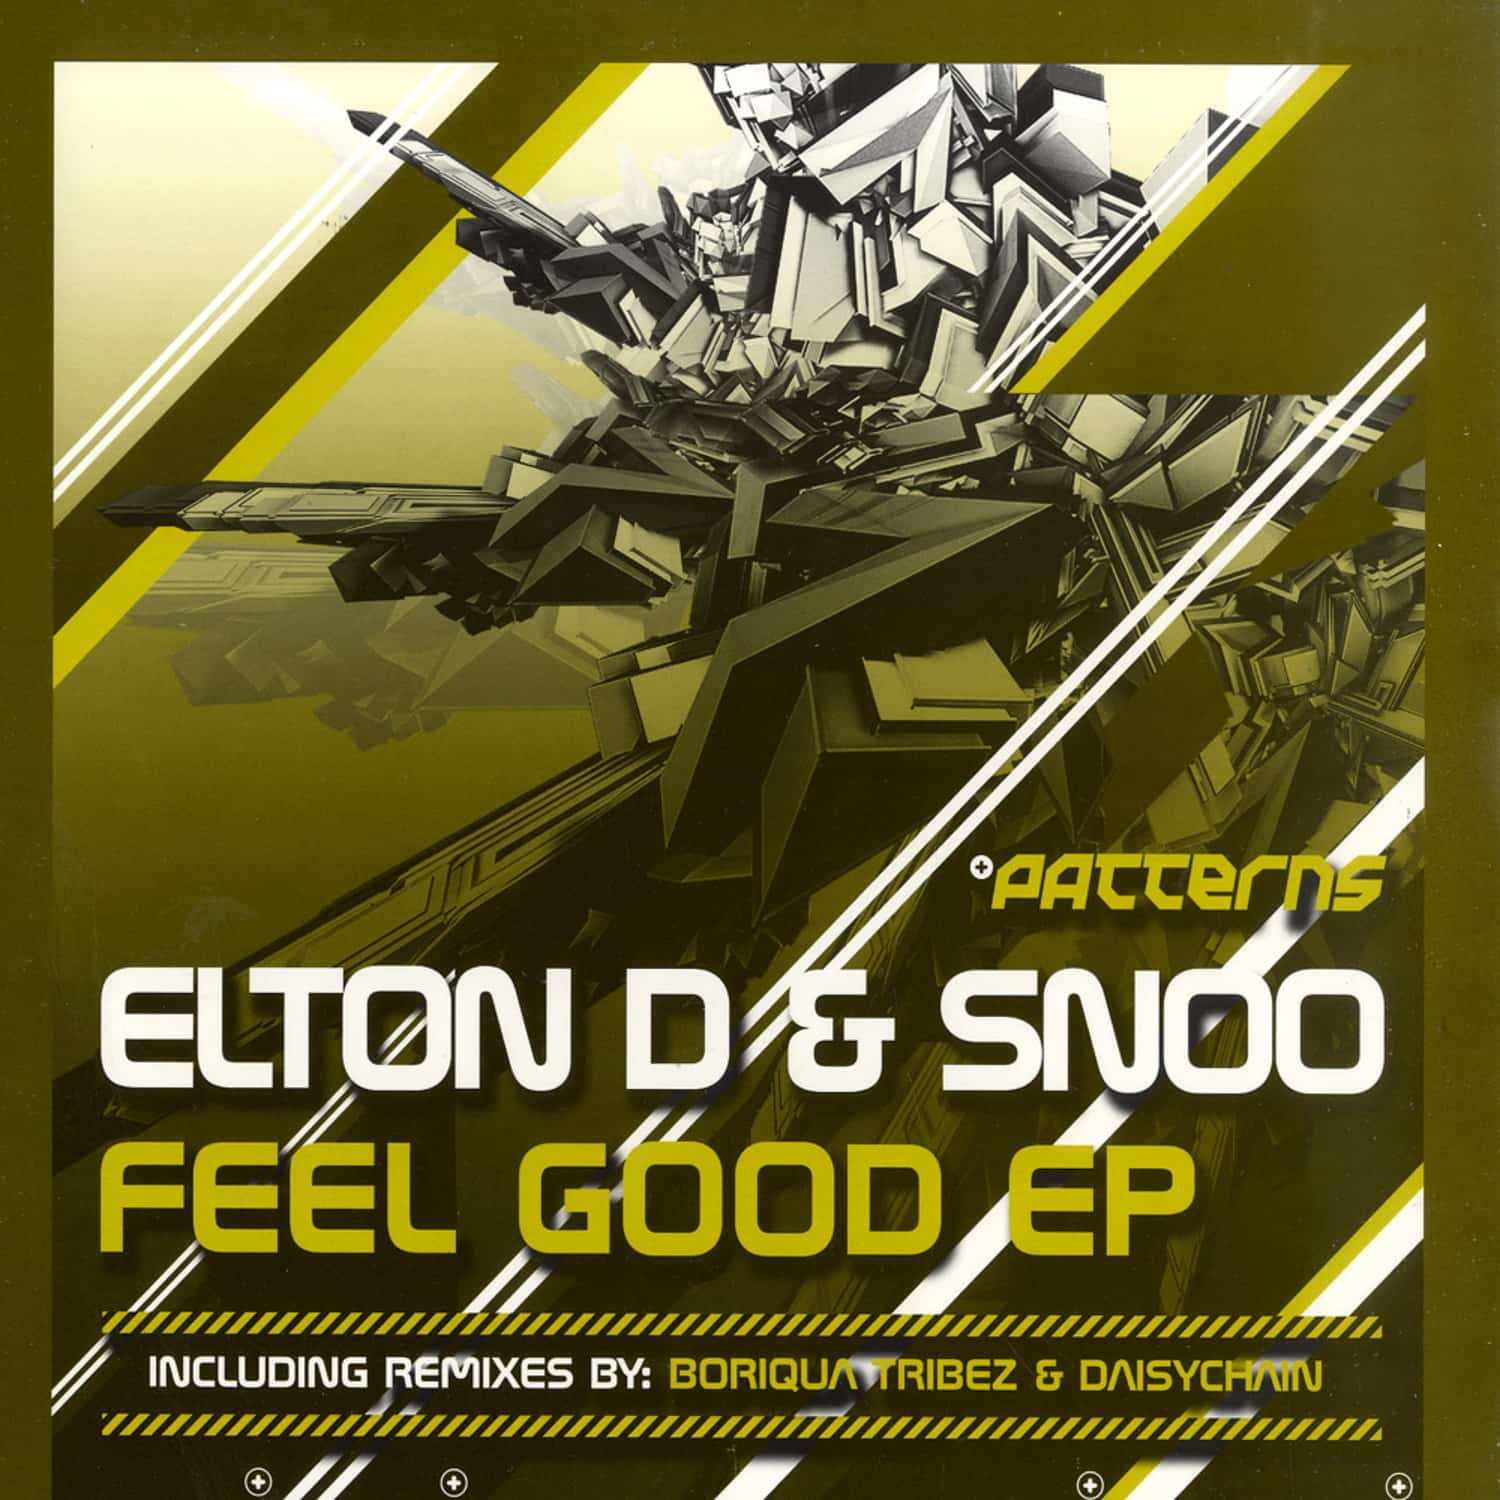 Elton D & Snoo - FEEL GOOD EP 